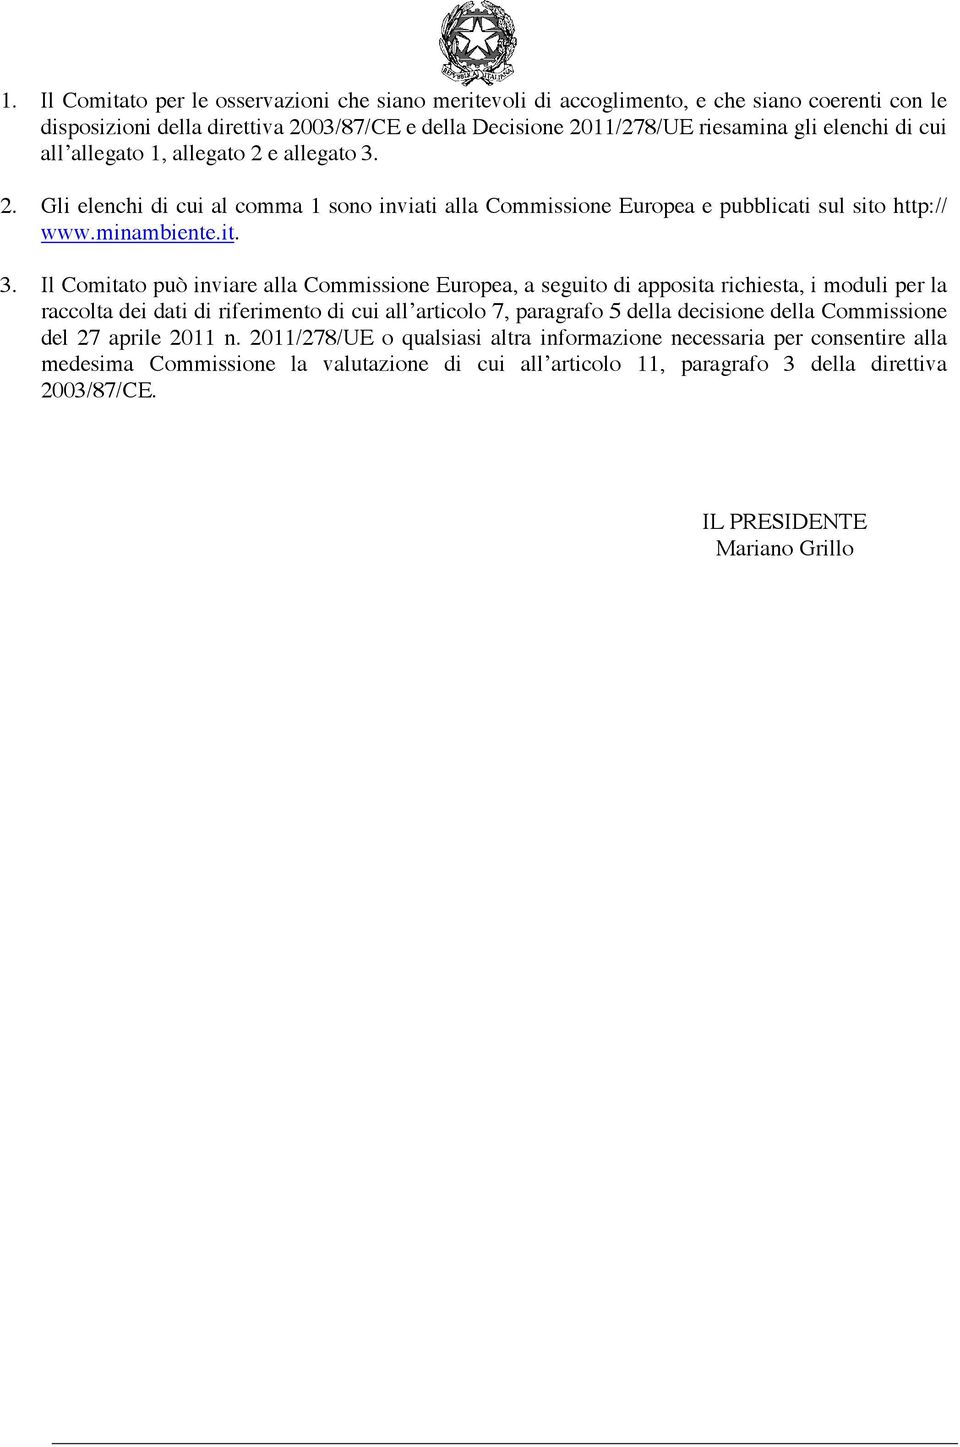 2. Gli elenchi cui al comma 1 sono inviati alla Commissione Europea e pubblicati sul sito http:// www.minambiente.it. 3.